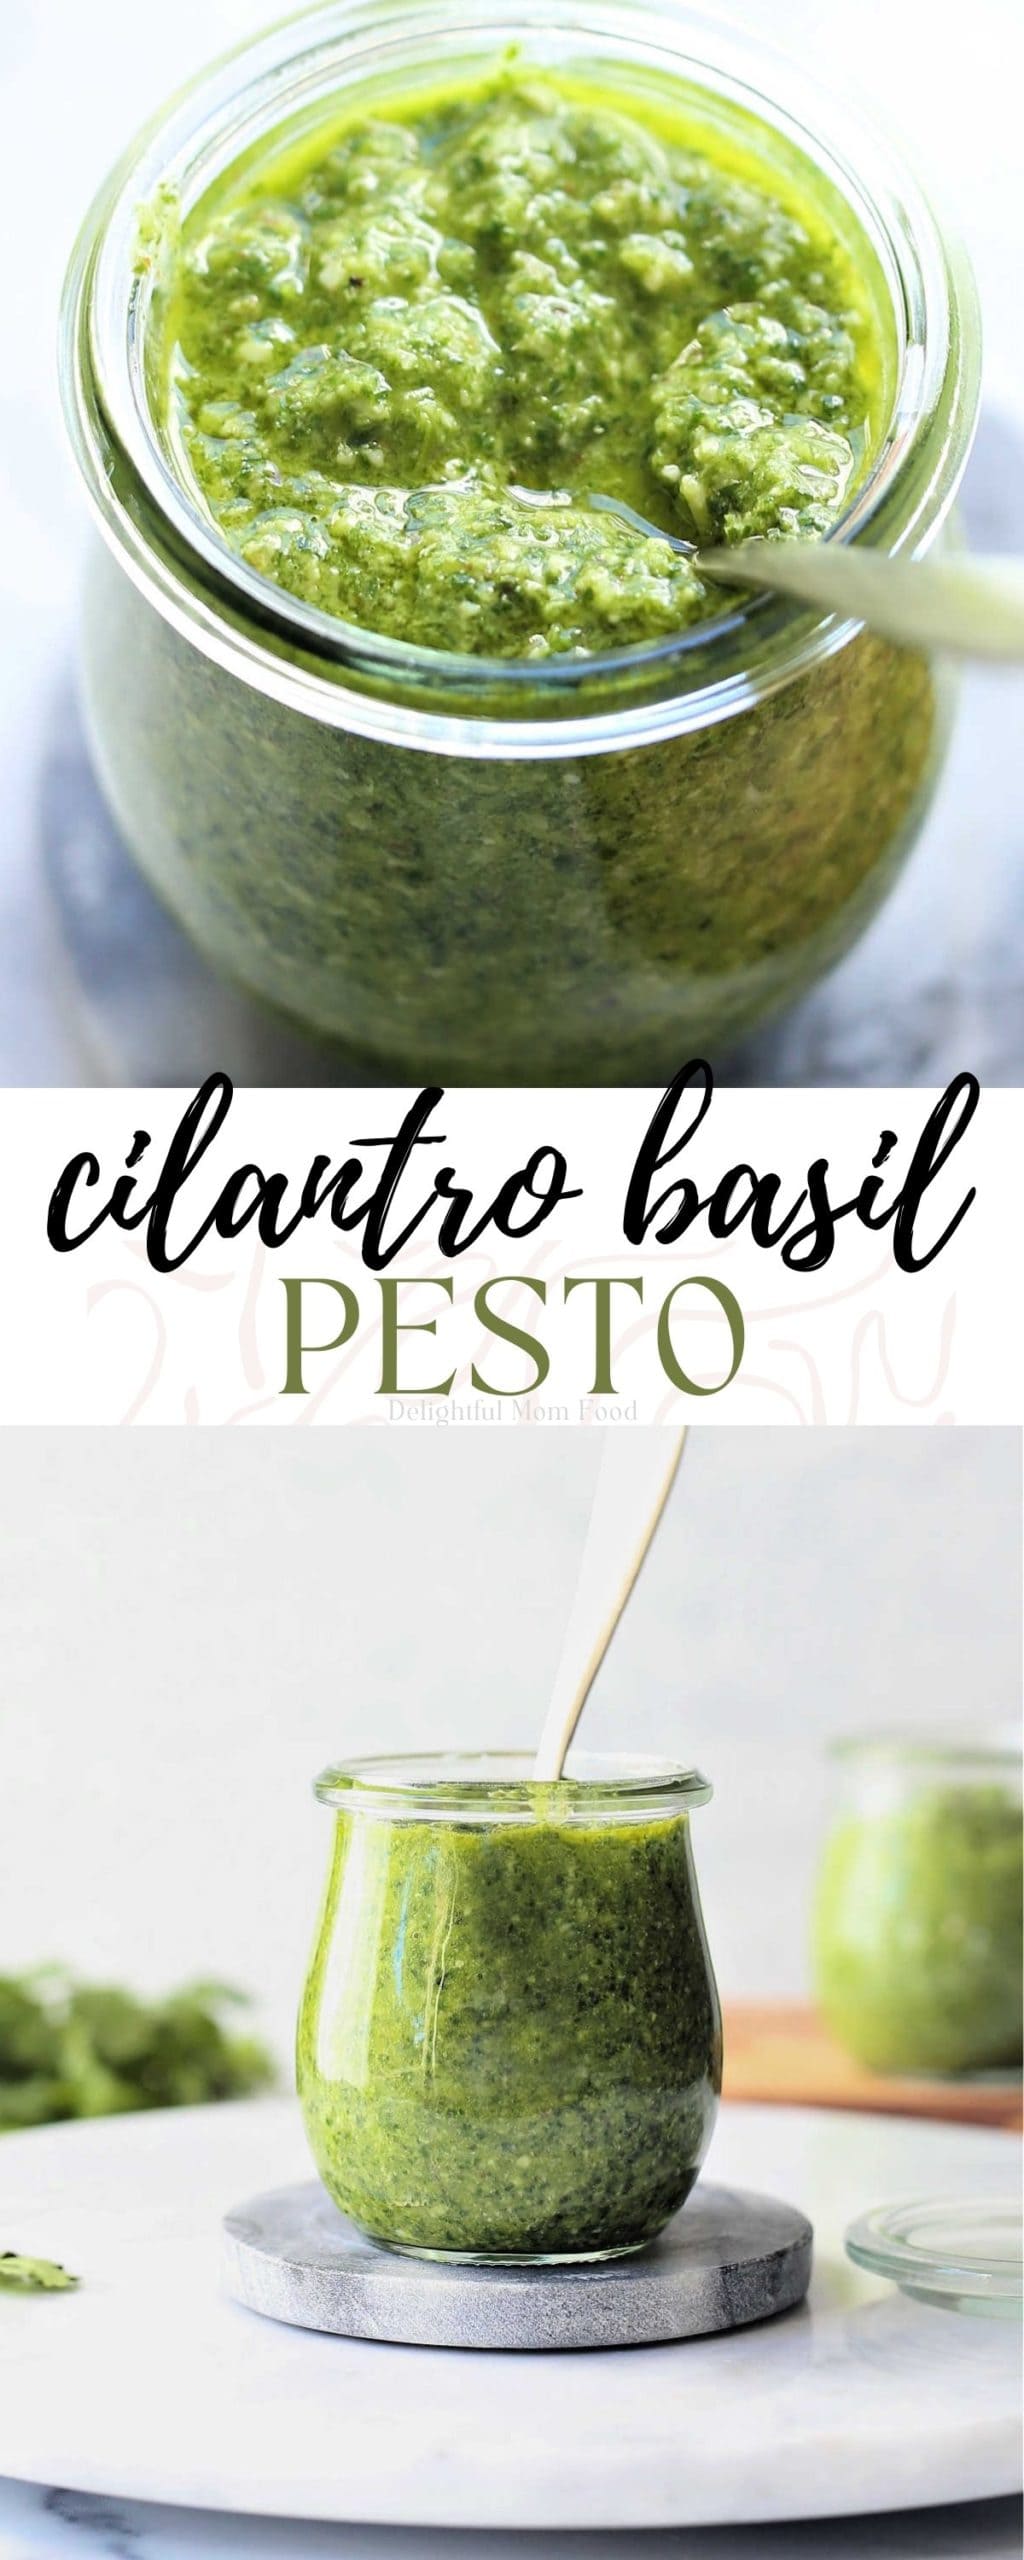 basil and cilantro pesto recipe